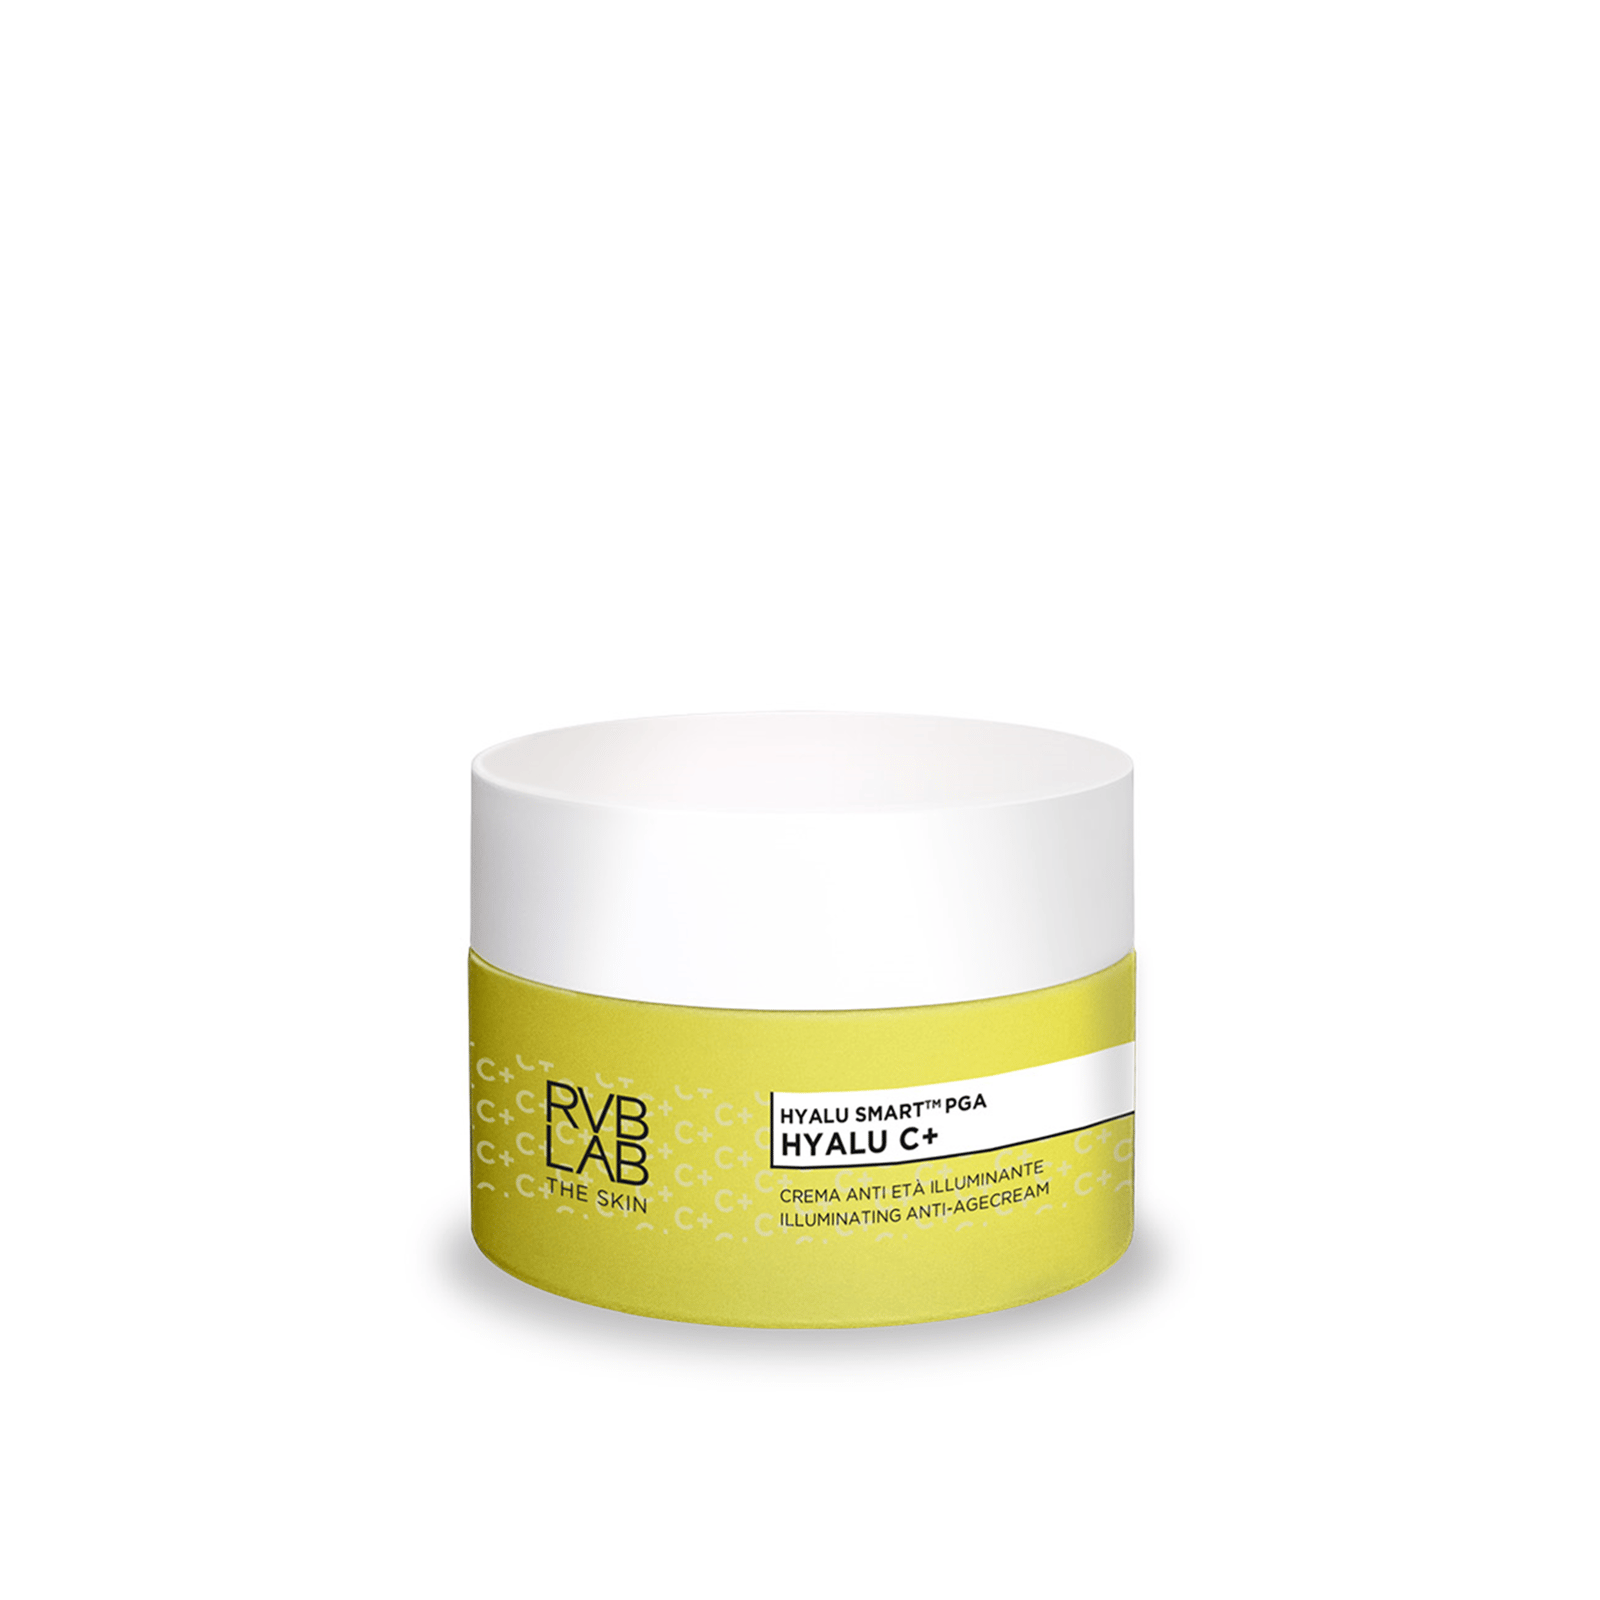 RVB LAB Hyalu C+ Illuminating Anti-Age Cream 50ml (1.7 fl oz)